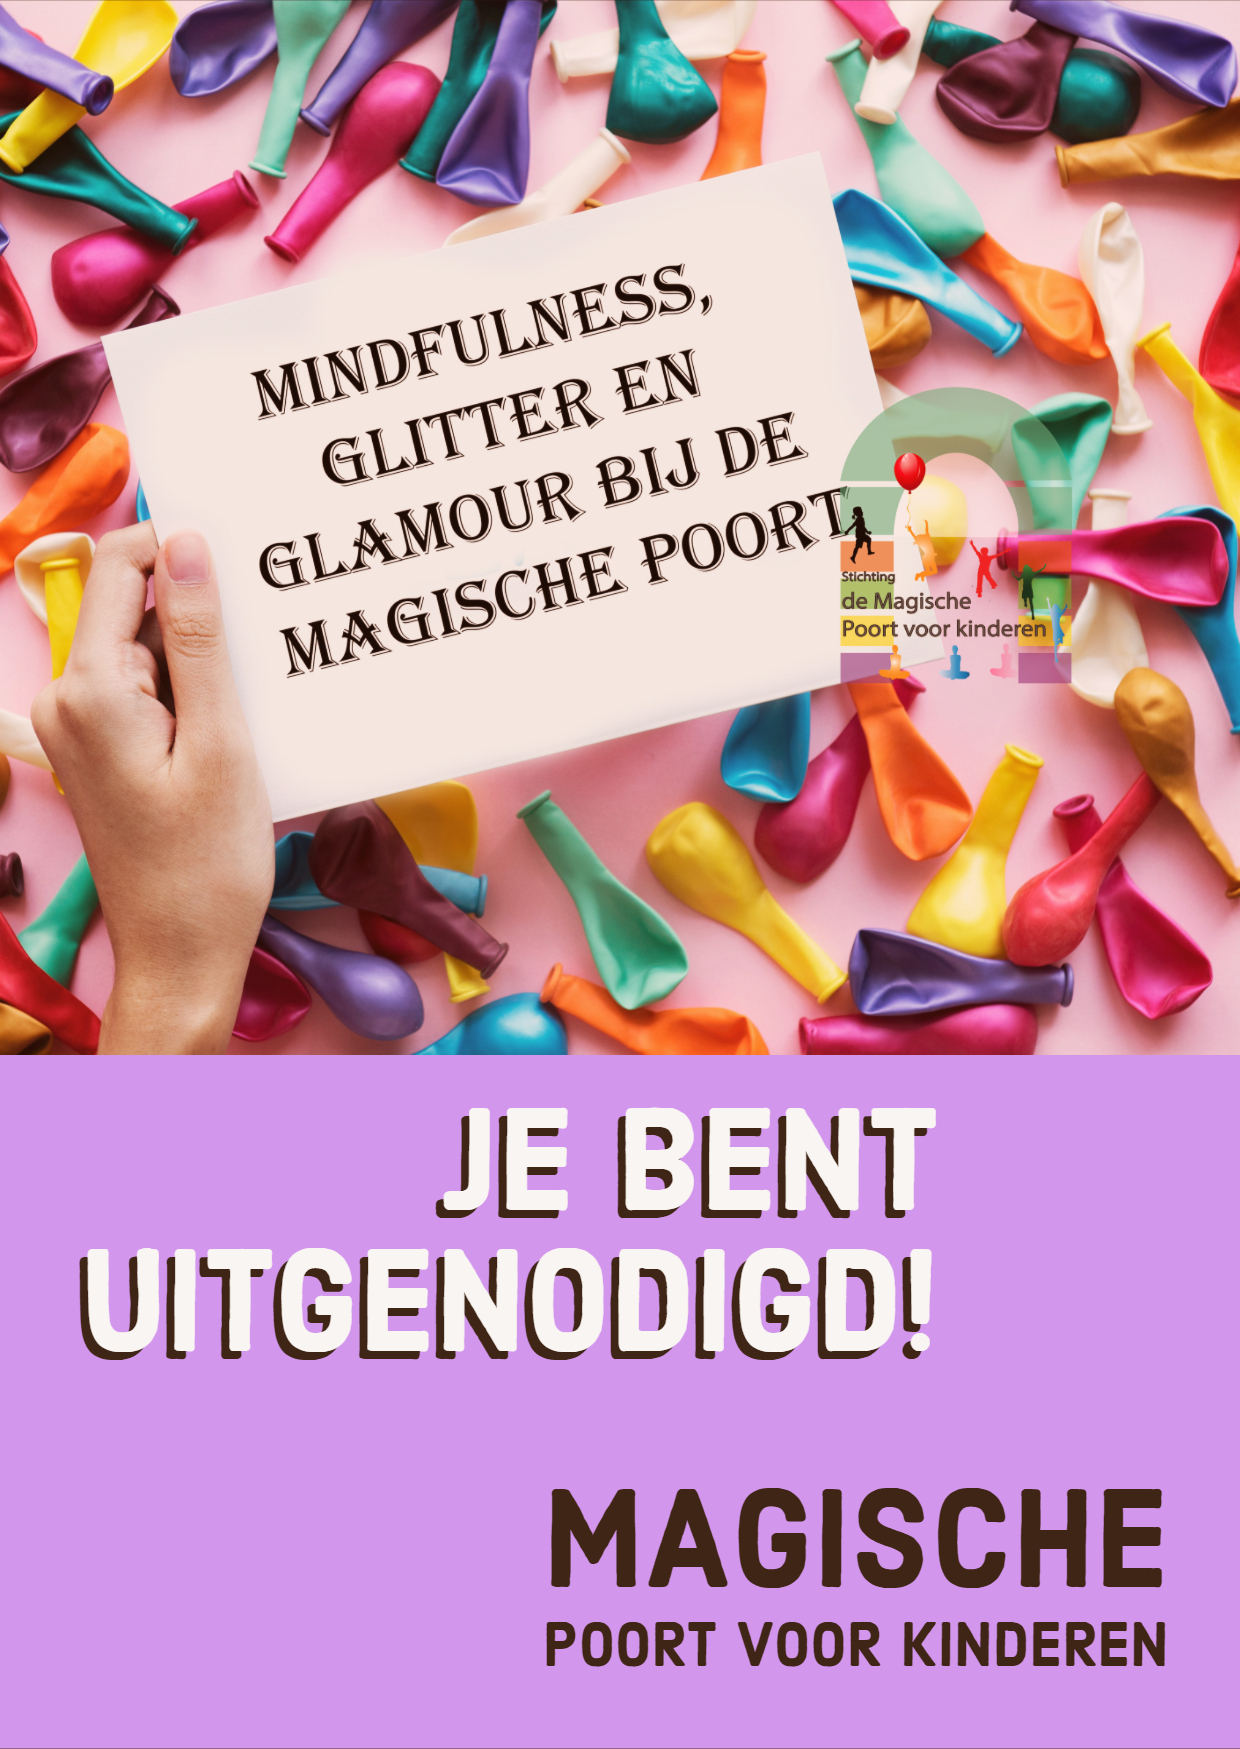 Lees meer over het artikel Mindfulness, Glitter en Glamour dag bij de Magische Poort